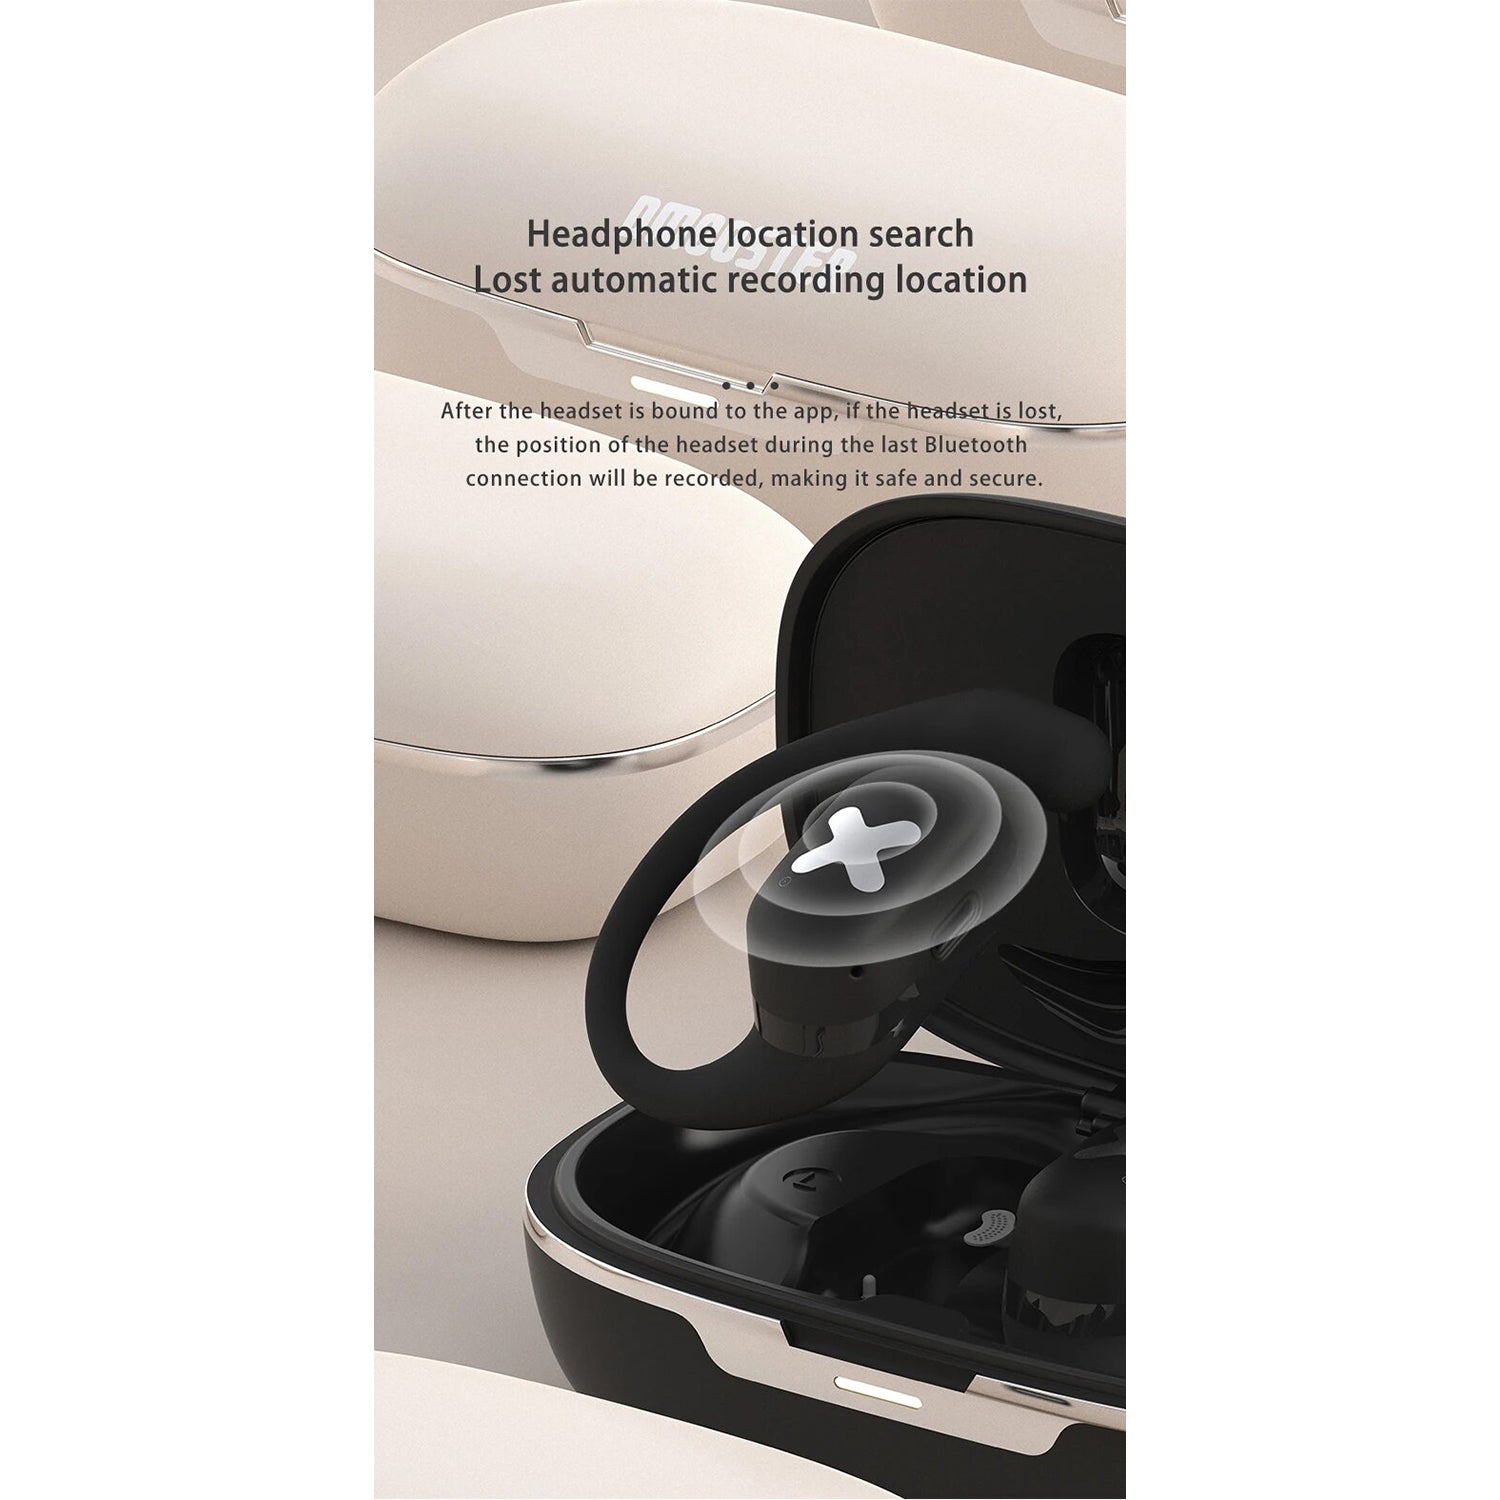 O2W SELECTION DMOOSTER D53 Open-Ear Bone Conduction Sport Wireless Bluetooth Earphones With App, Black